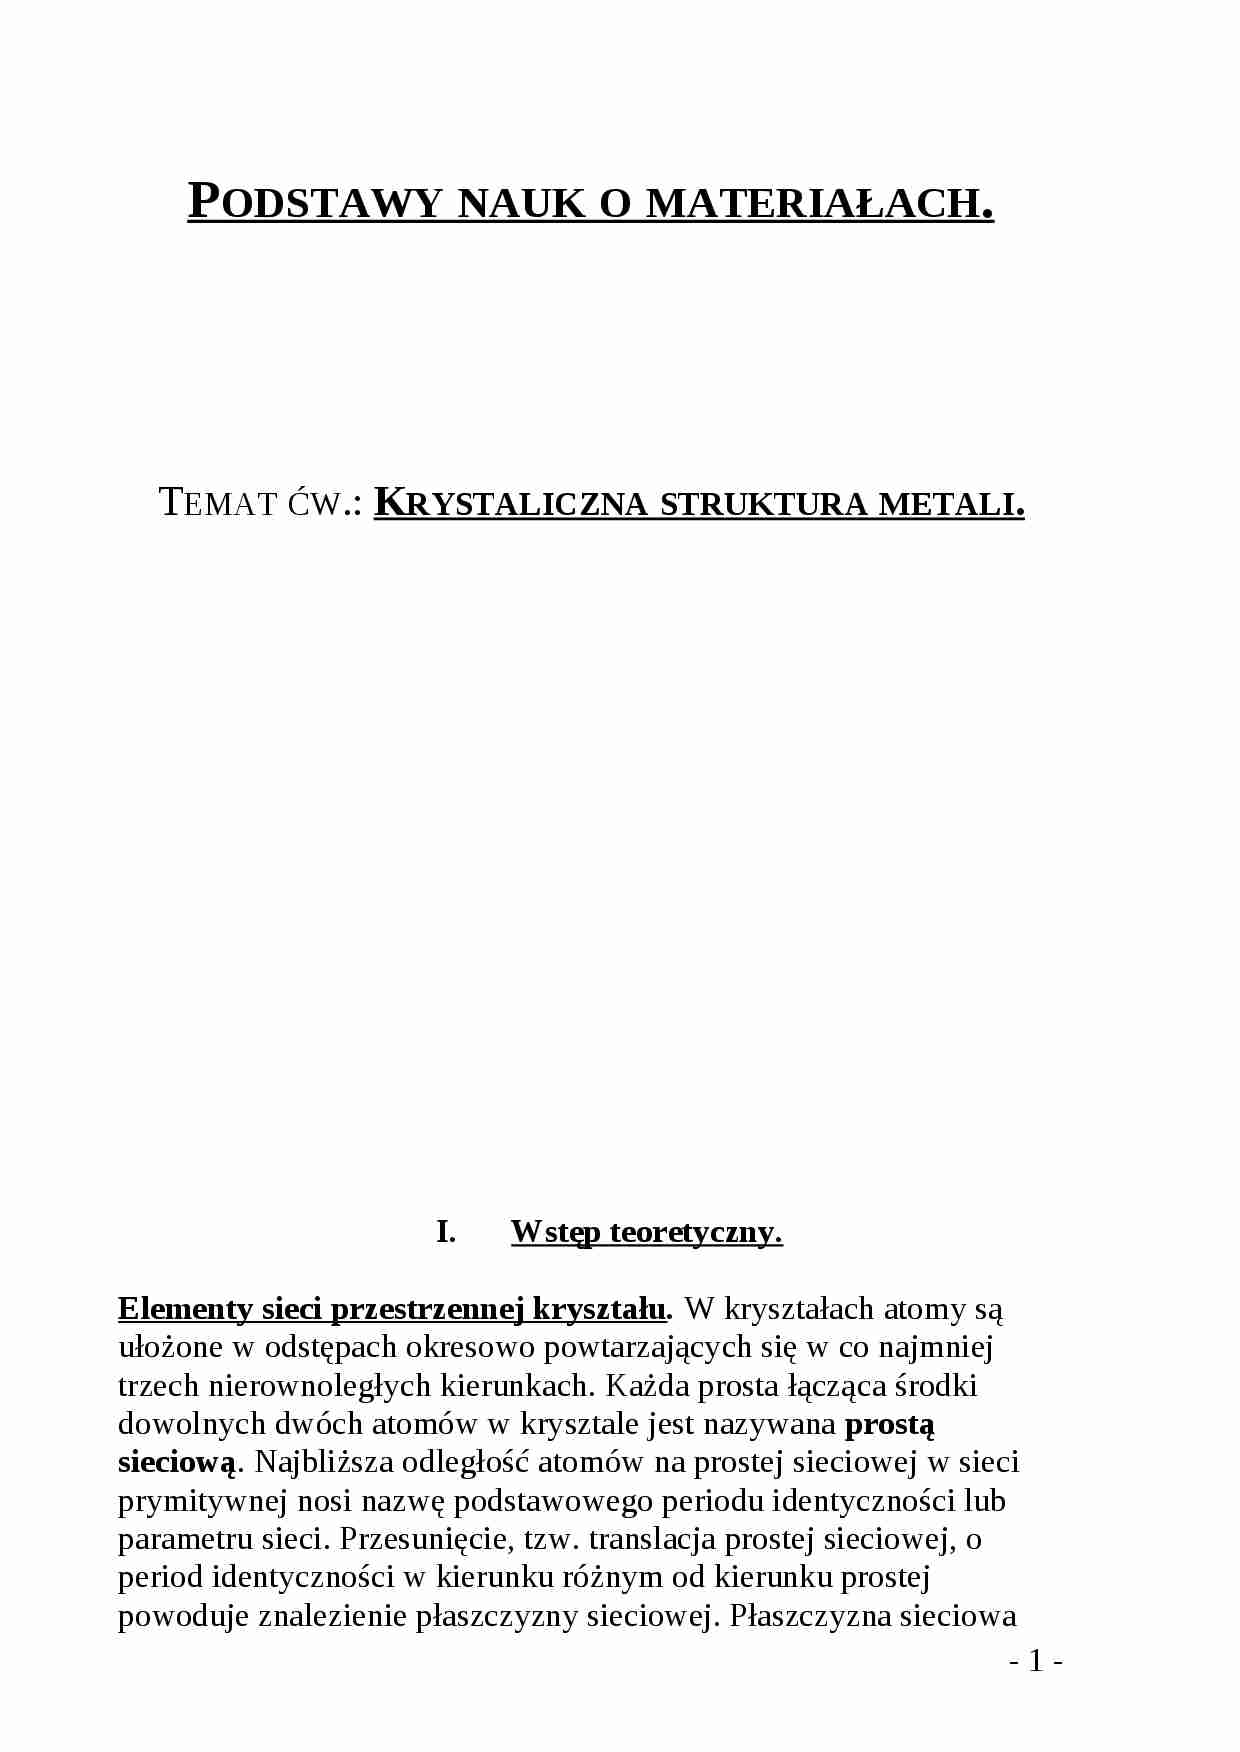 Krystaliczna skruktura metali - omówienie - strona 1